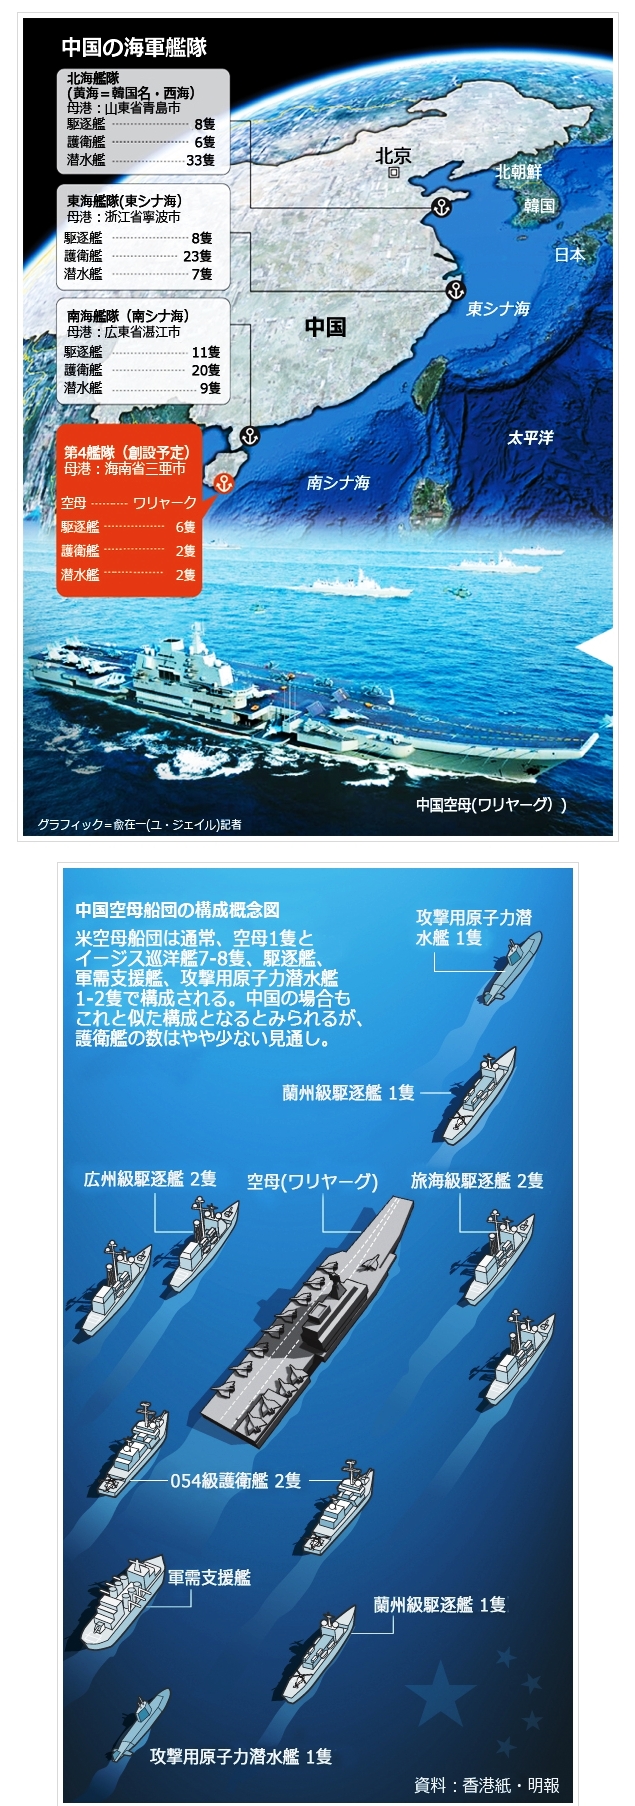 中国、空母ワリャーグ就役で第４艦隊創設へ、新艦隊司令部は南シナ海に面する海南島三亜に設置か